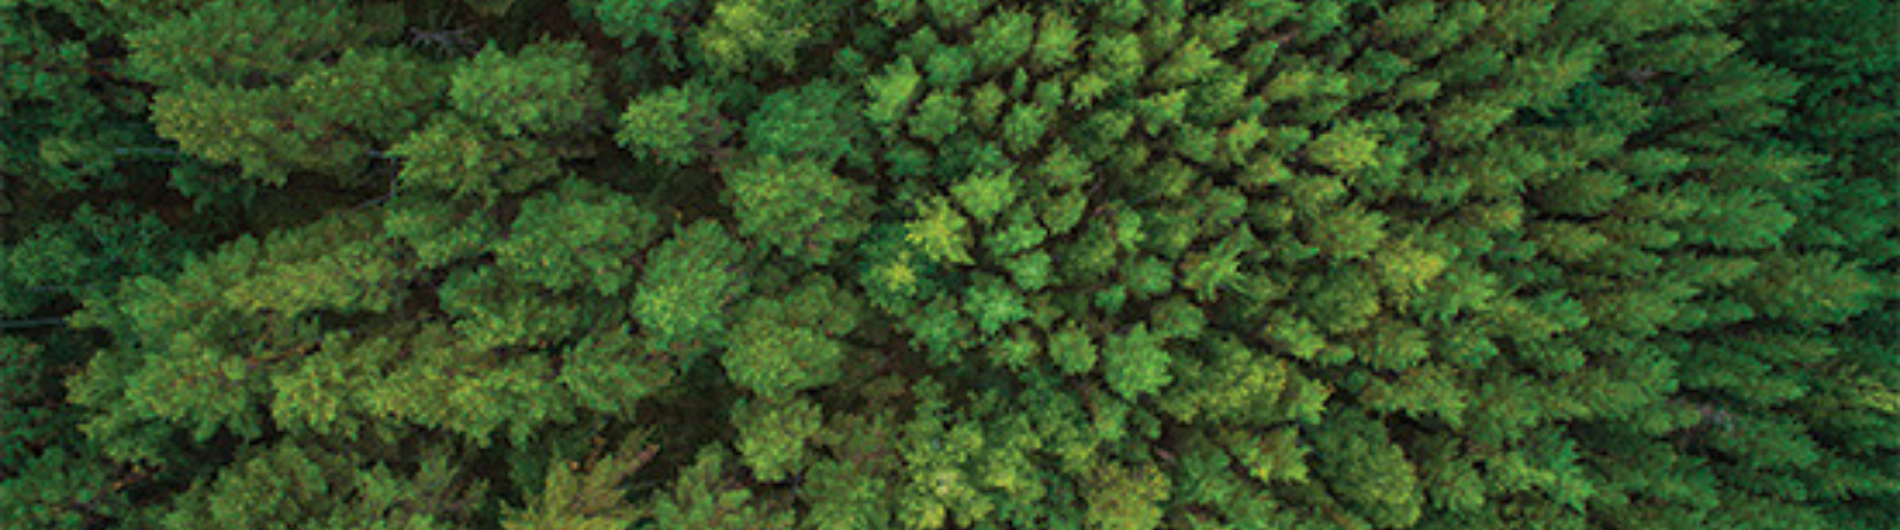 Joven logra récord mundial por haber plantado más de 23 mil árboles en un día